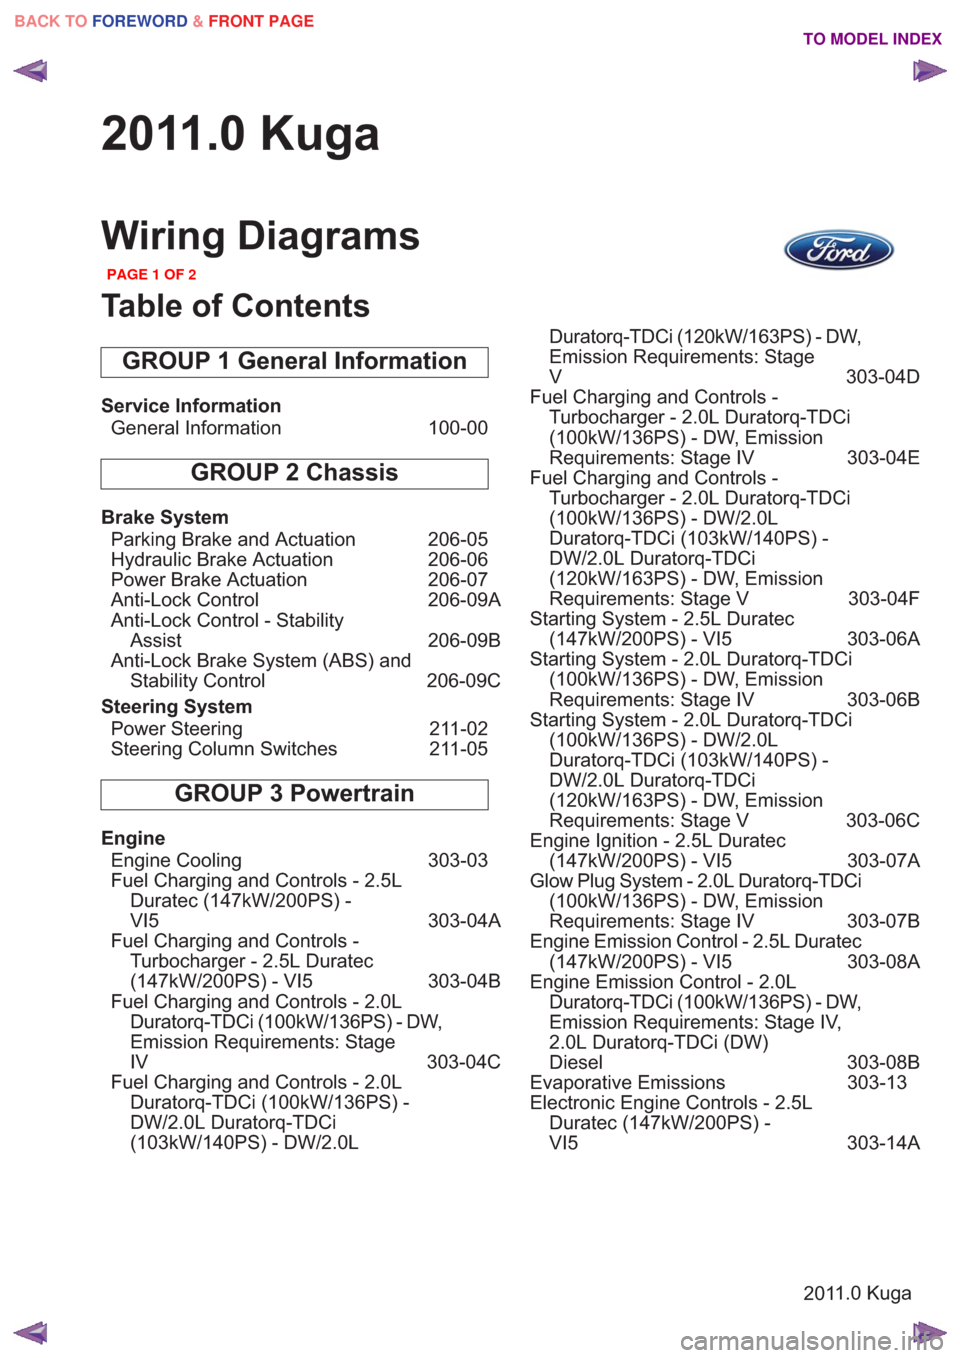 Ford Kuga 2011 1 G Wiring Diagram Workshop Manual